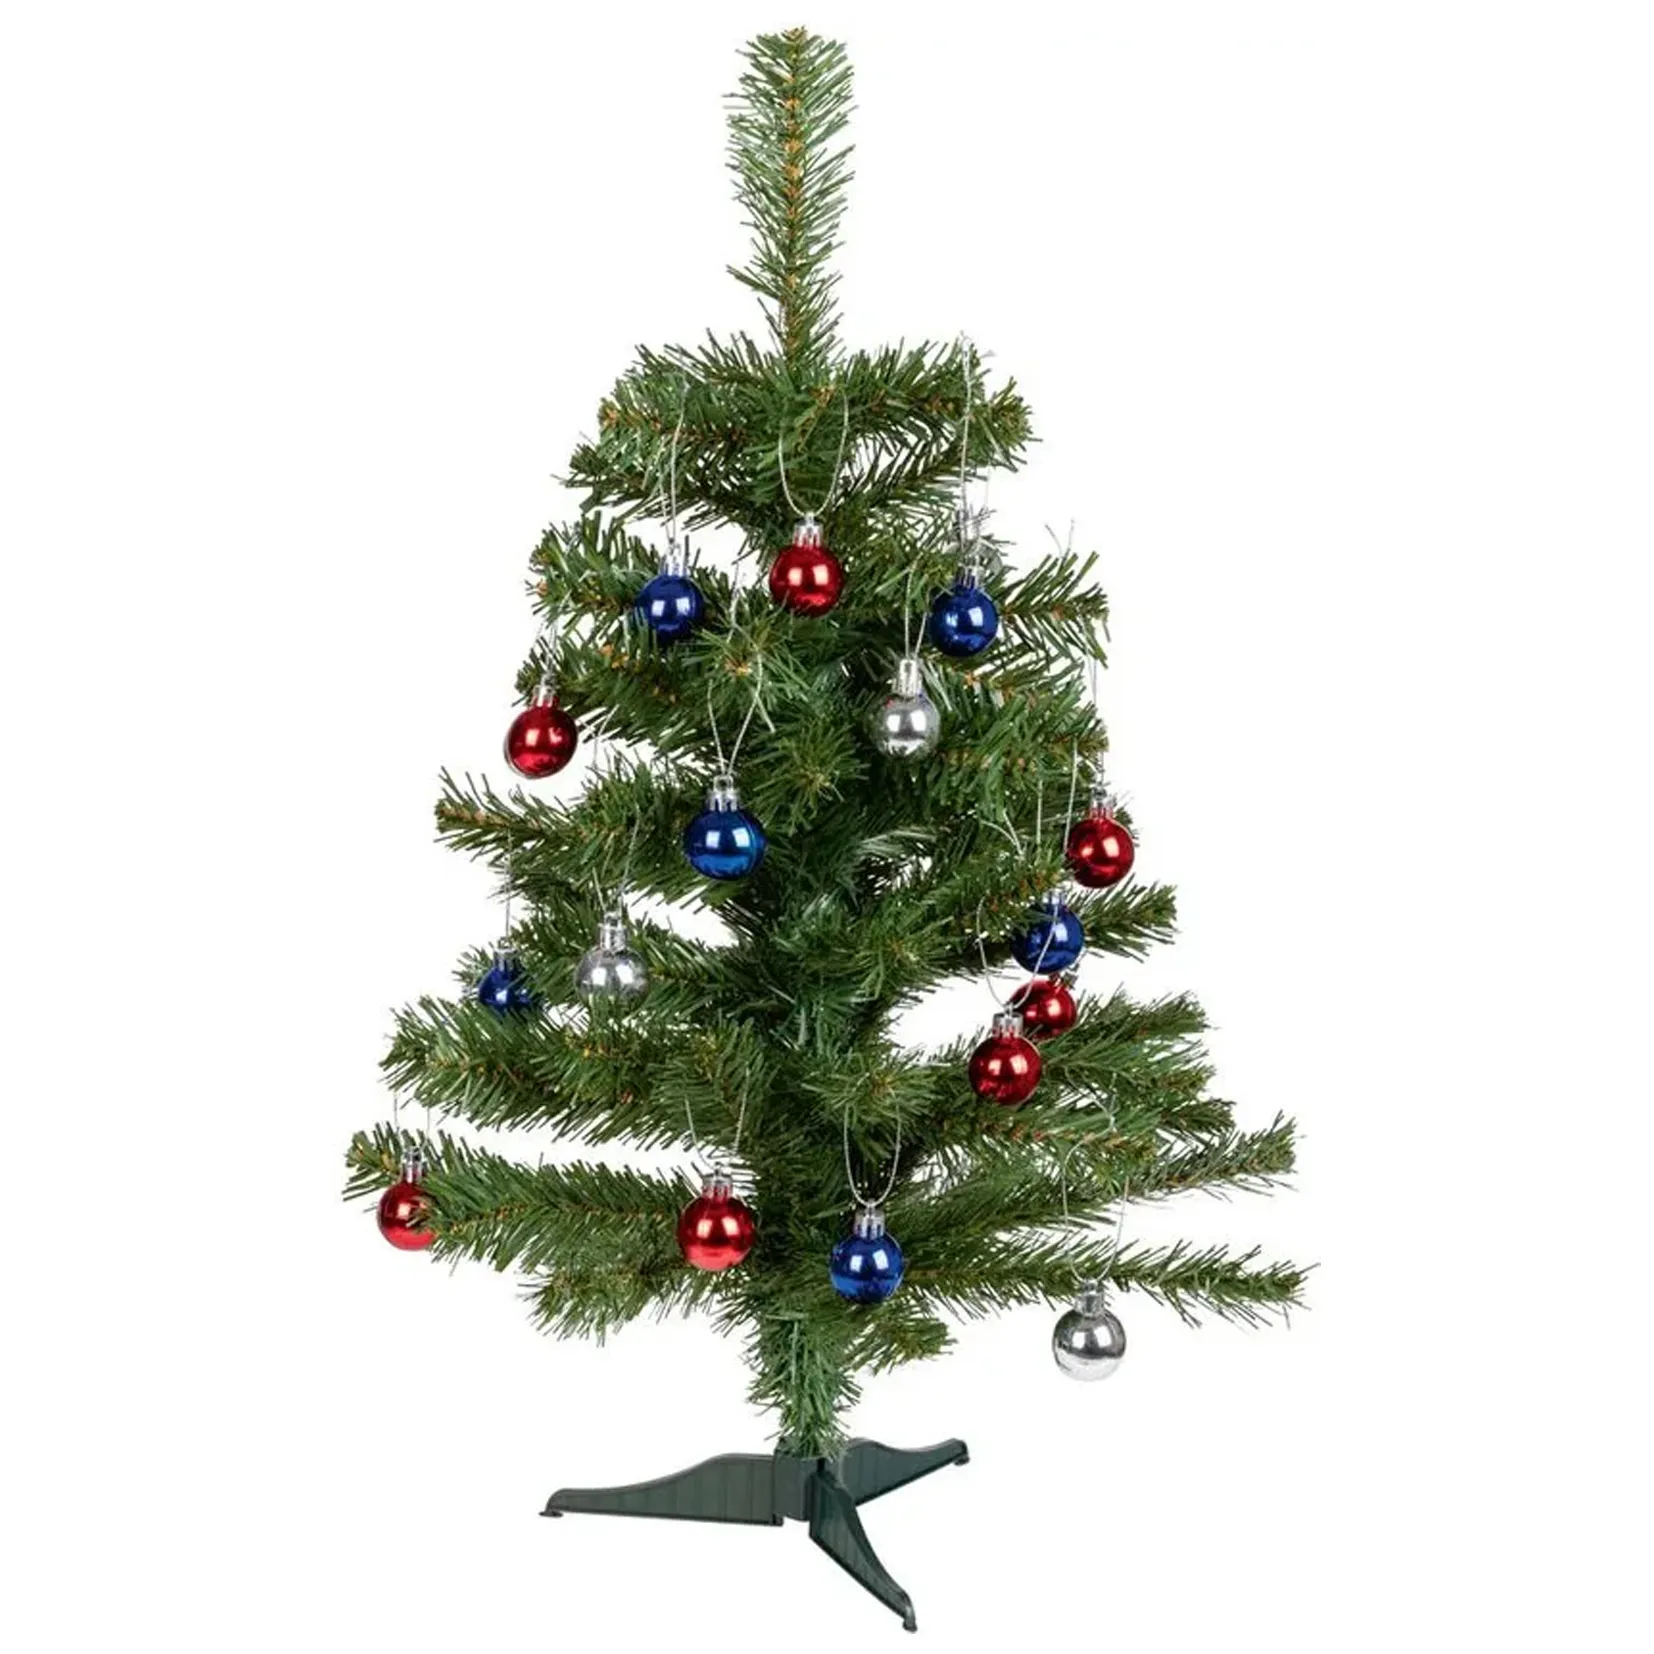 Mini Kerstboom 60cm hoog – 66 flexibel te vormen takken – Inclusief 24 kerstballen – Ø38 cm – voor op tafel bureau – kleine – eenvoudige opbouw – onderhoudsvriendelijk en herbruikbaar – kunstkerstboom net echt – volle kerstboom –